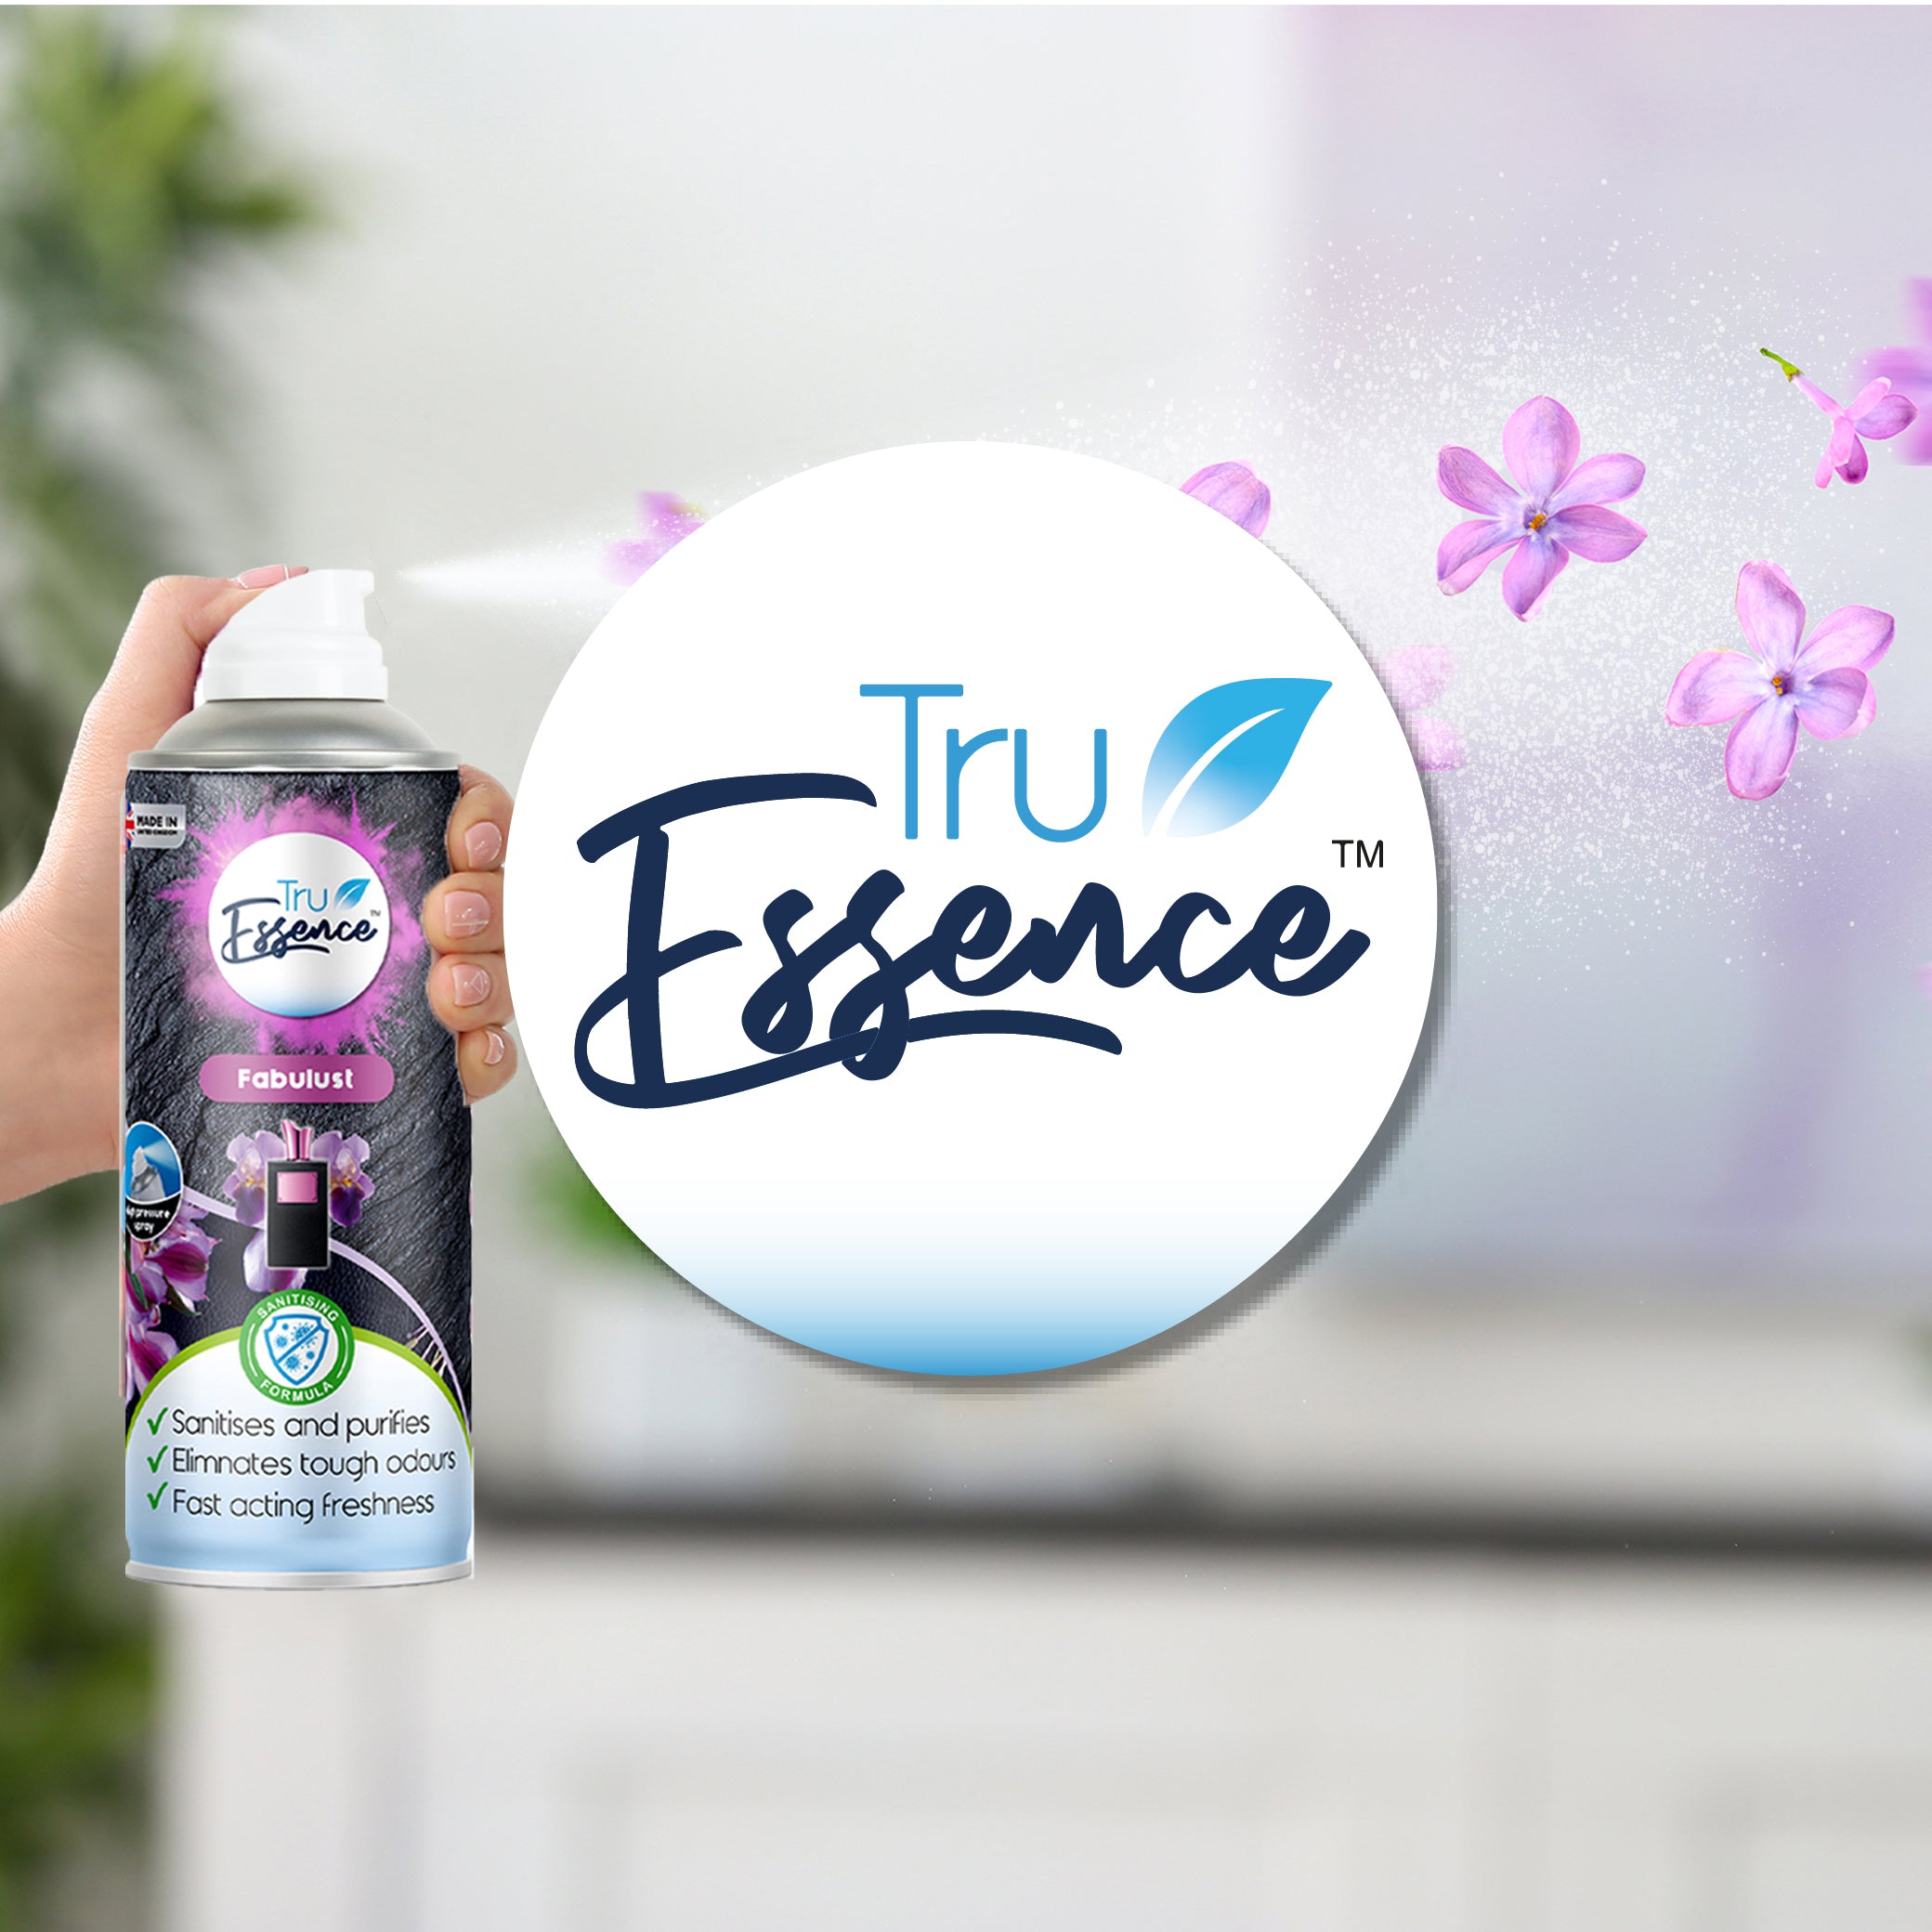 TruEssence | Air freshener and fragrance | DSL